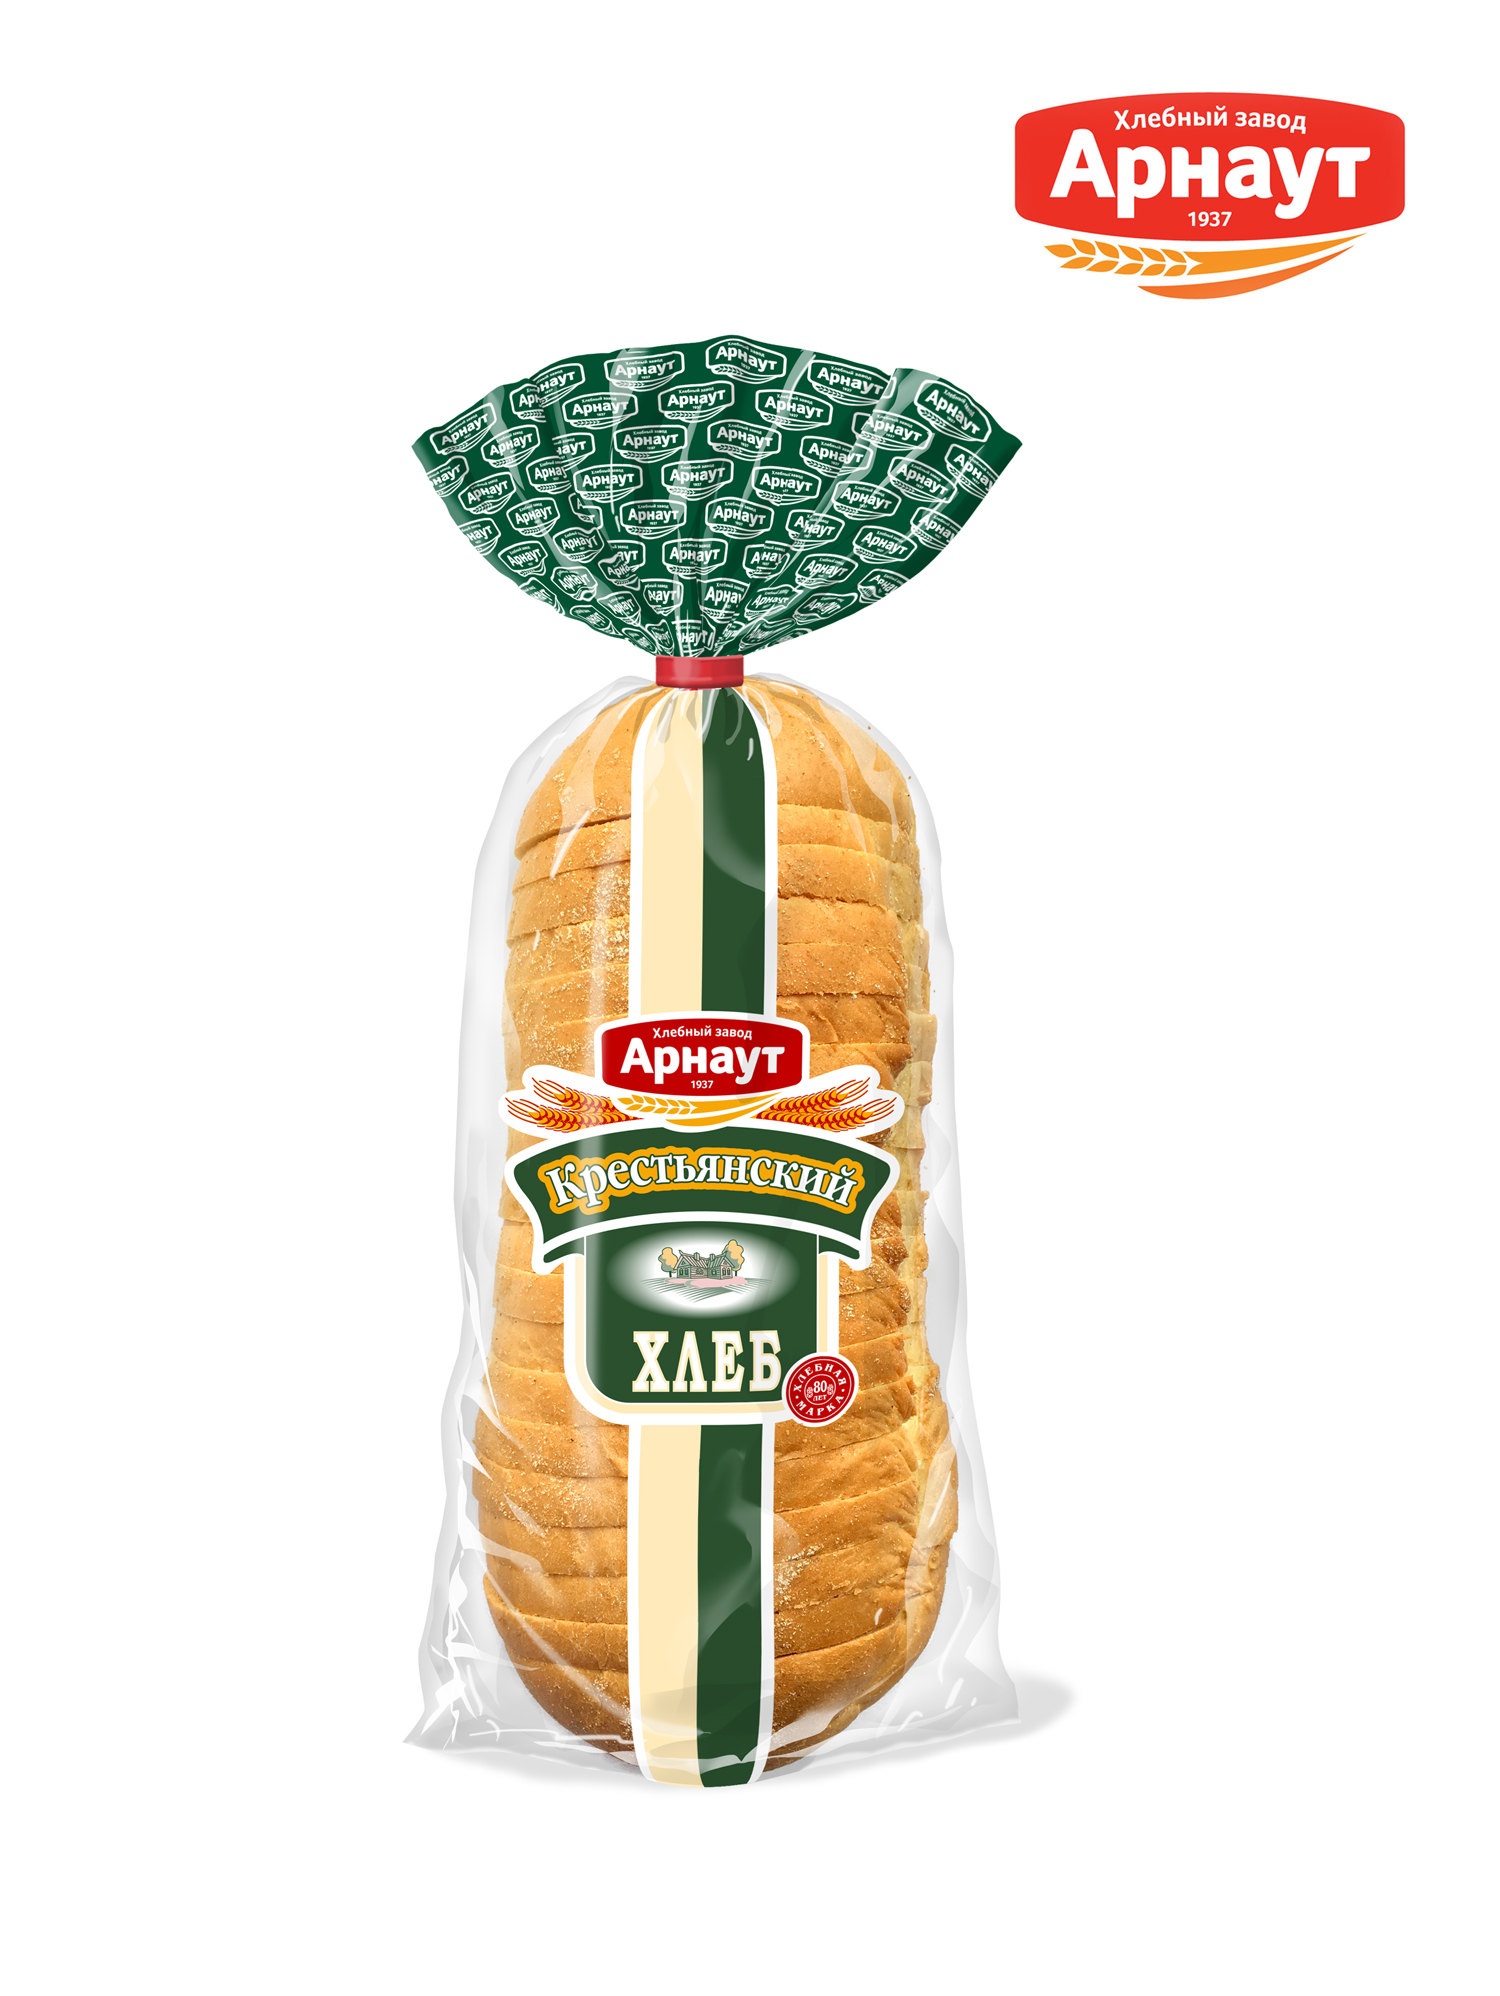 Хлеб серый, Арнаут, Крестьянский пшенично-ржаной, подовый 400 г